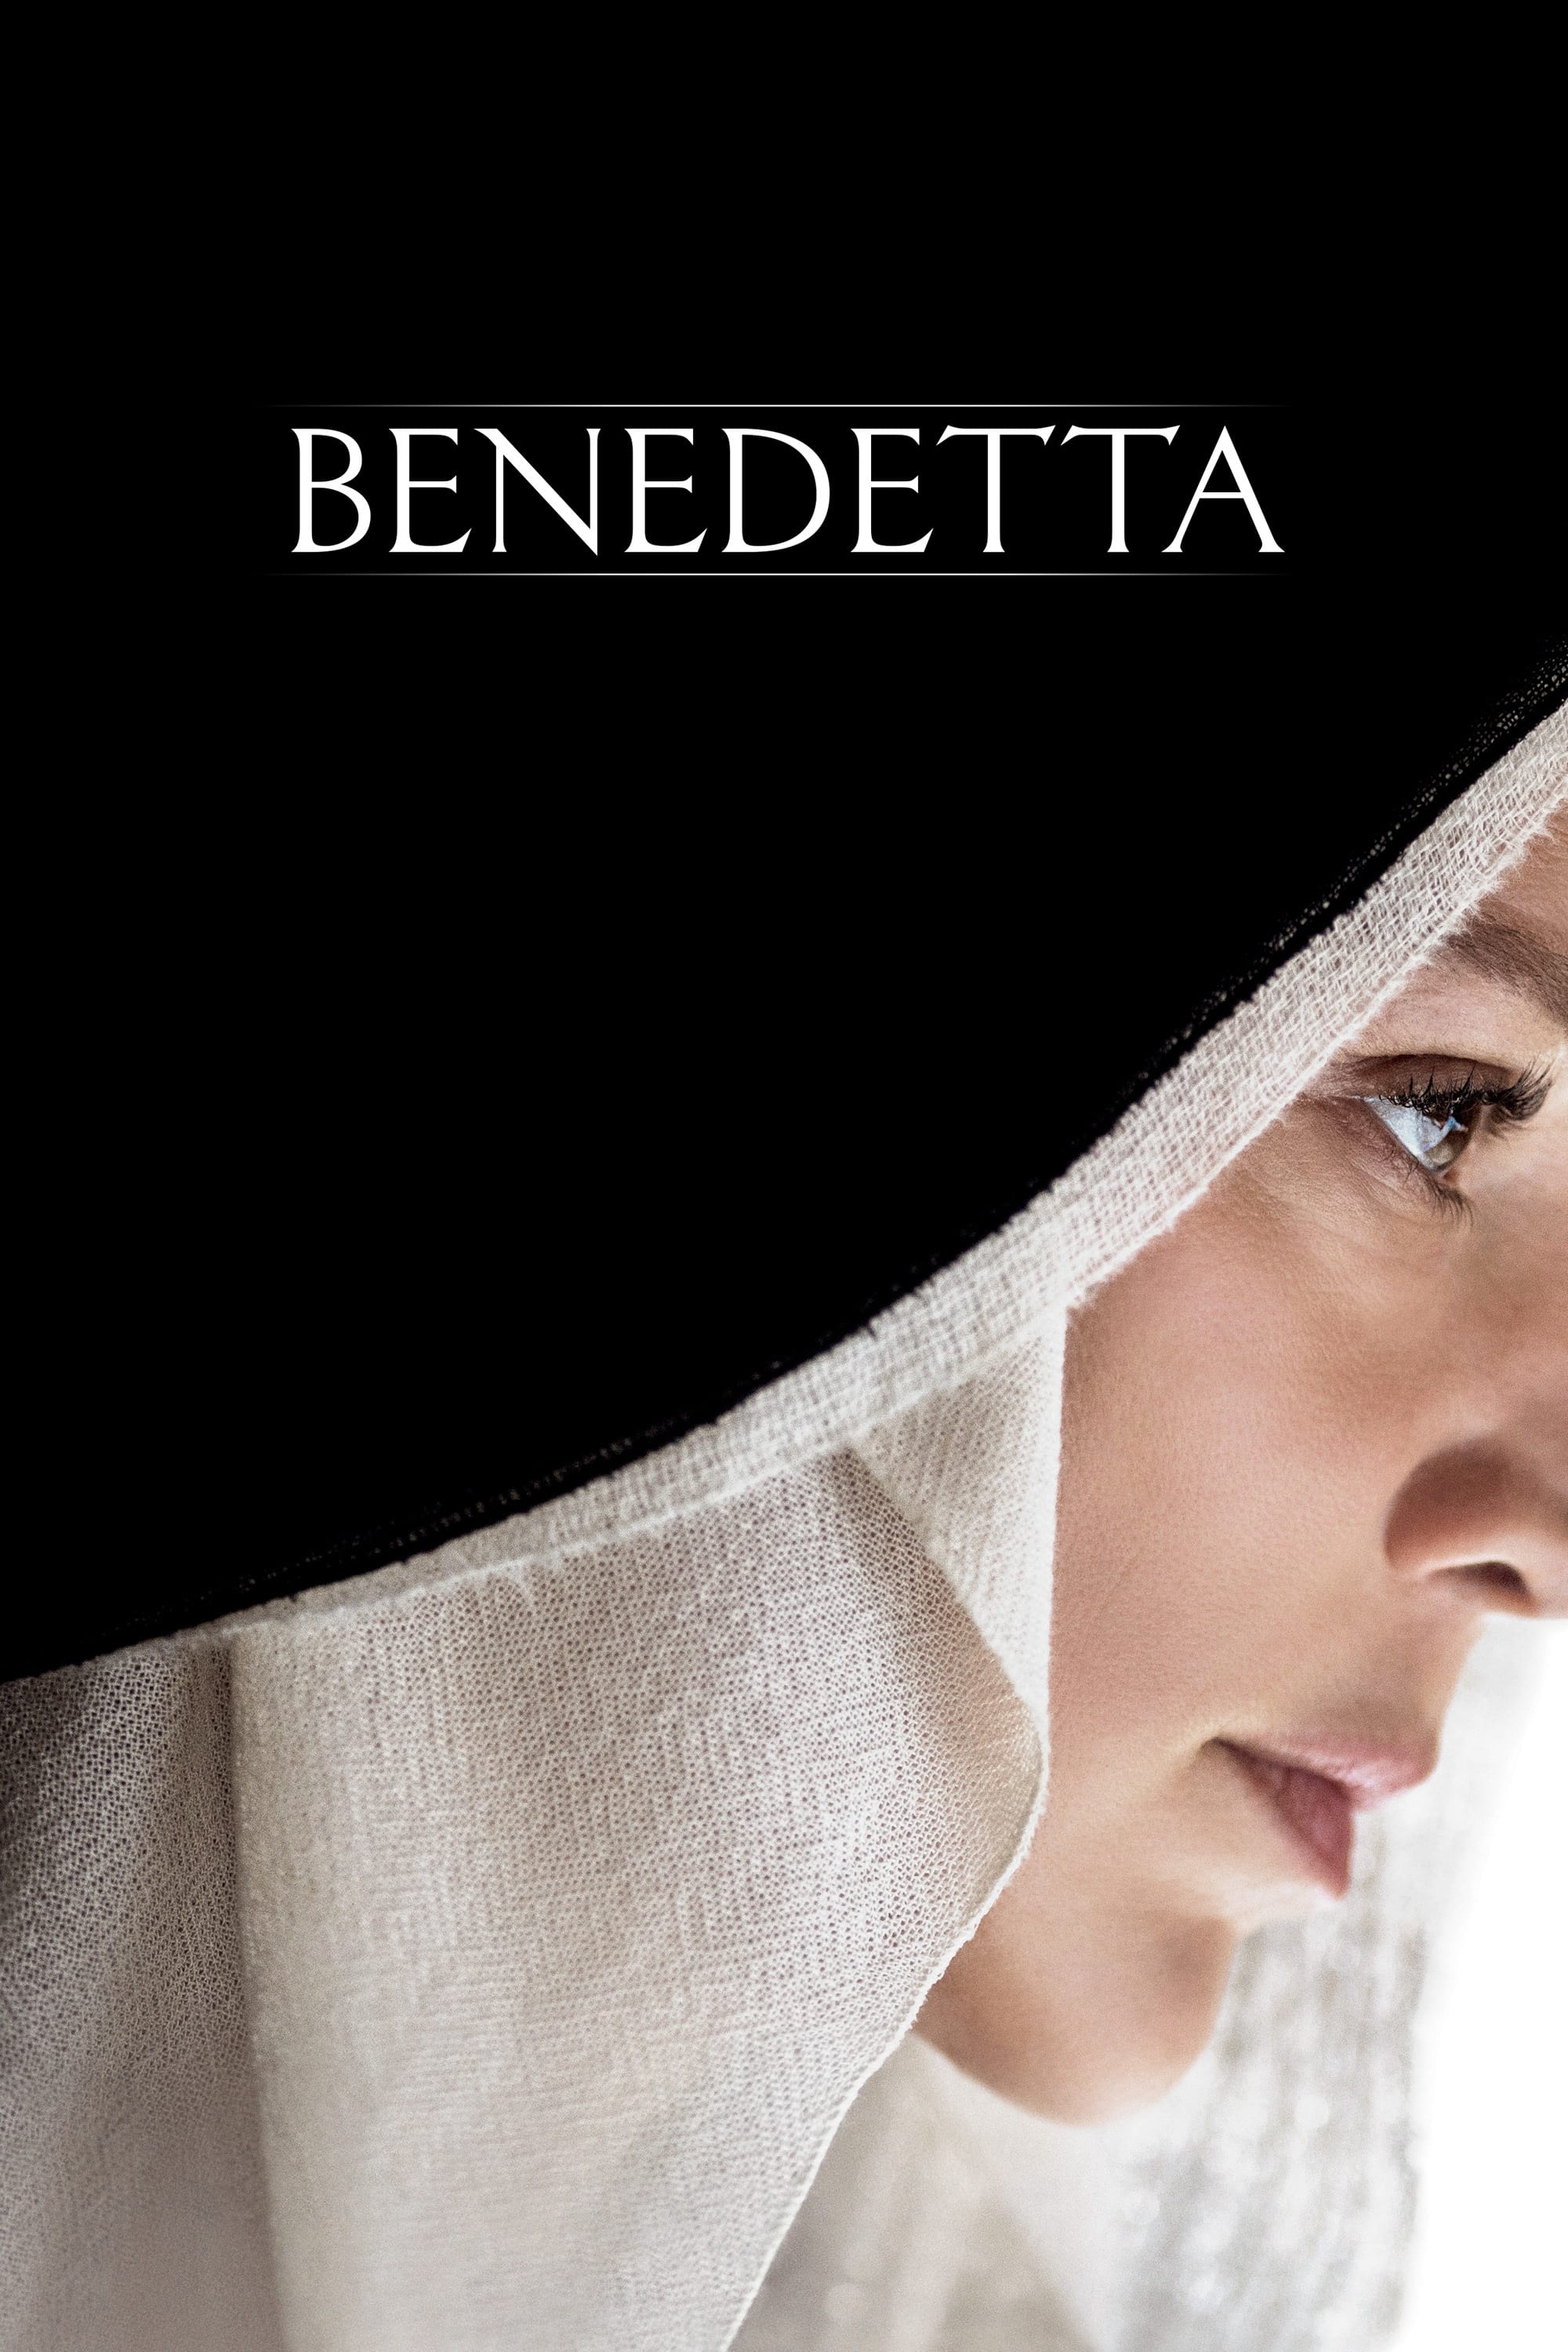 Câu Chuyện Về Benedetta (Benedetta) [2021]